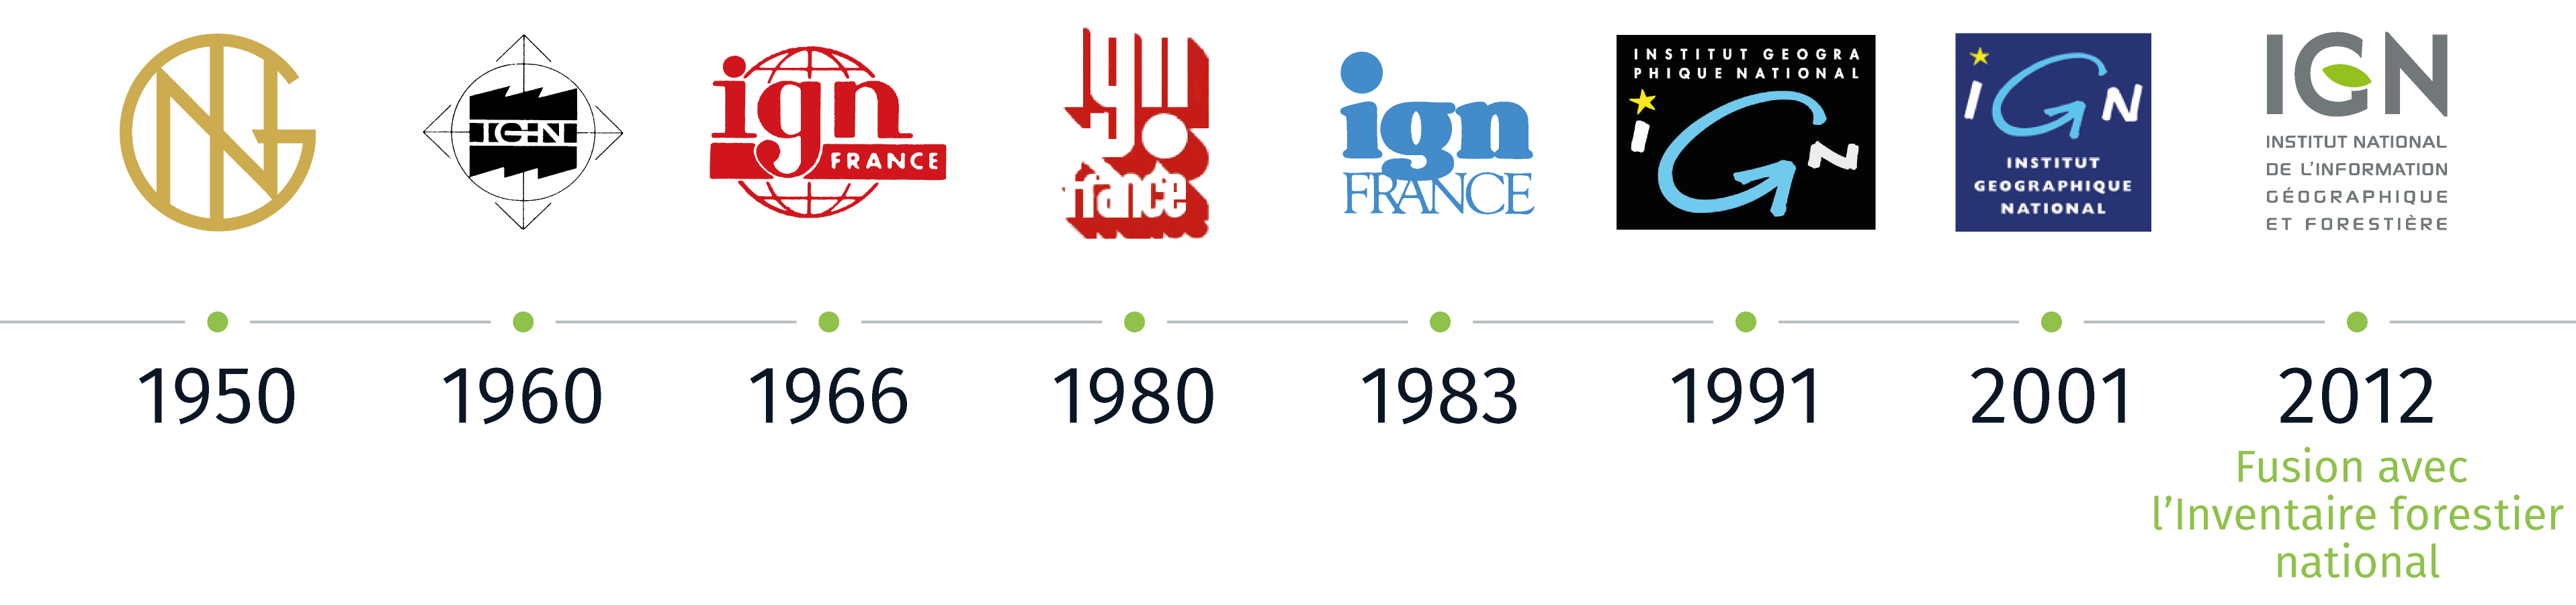 Évolution des logos de l'IGN au fil du temps